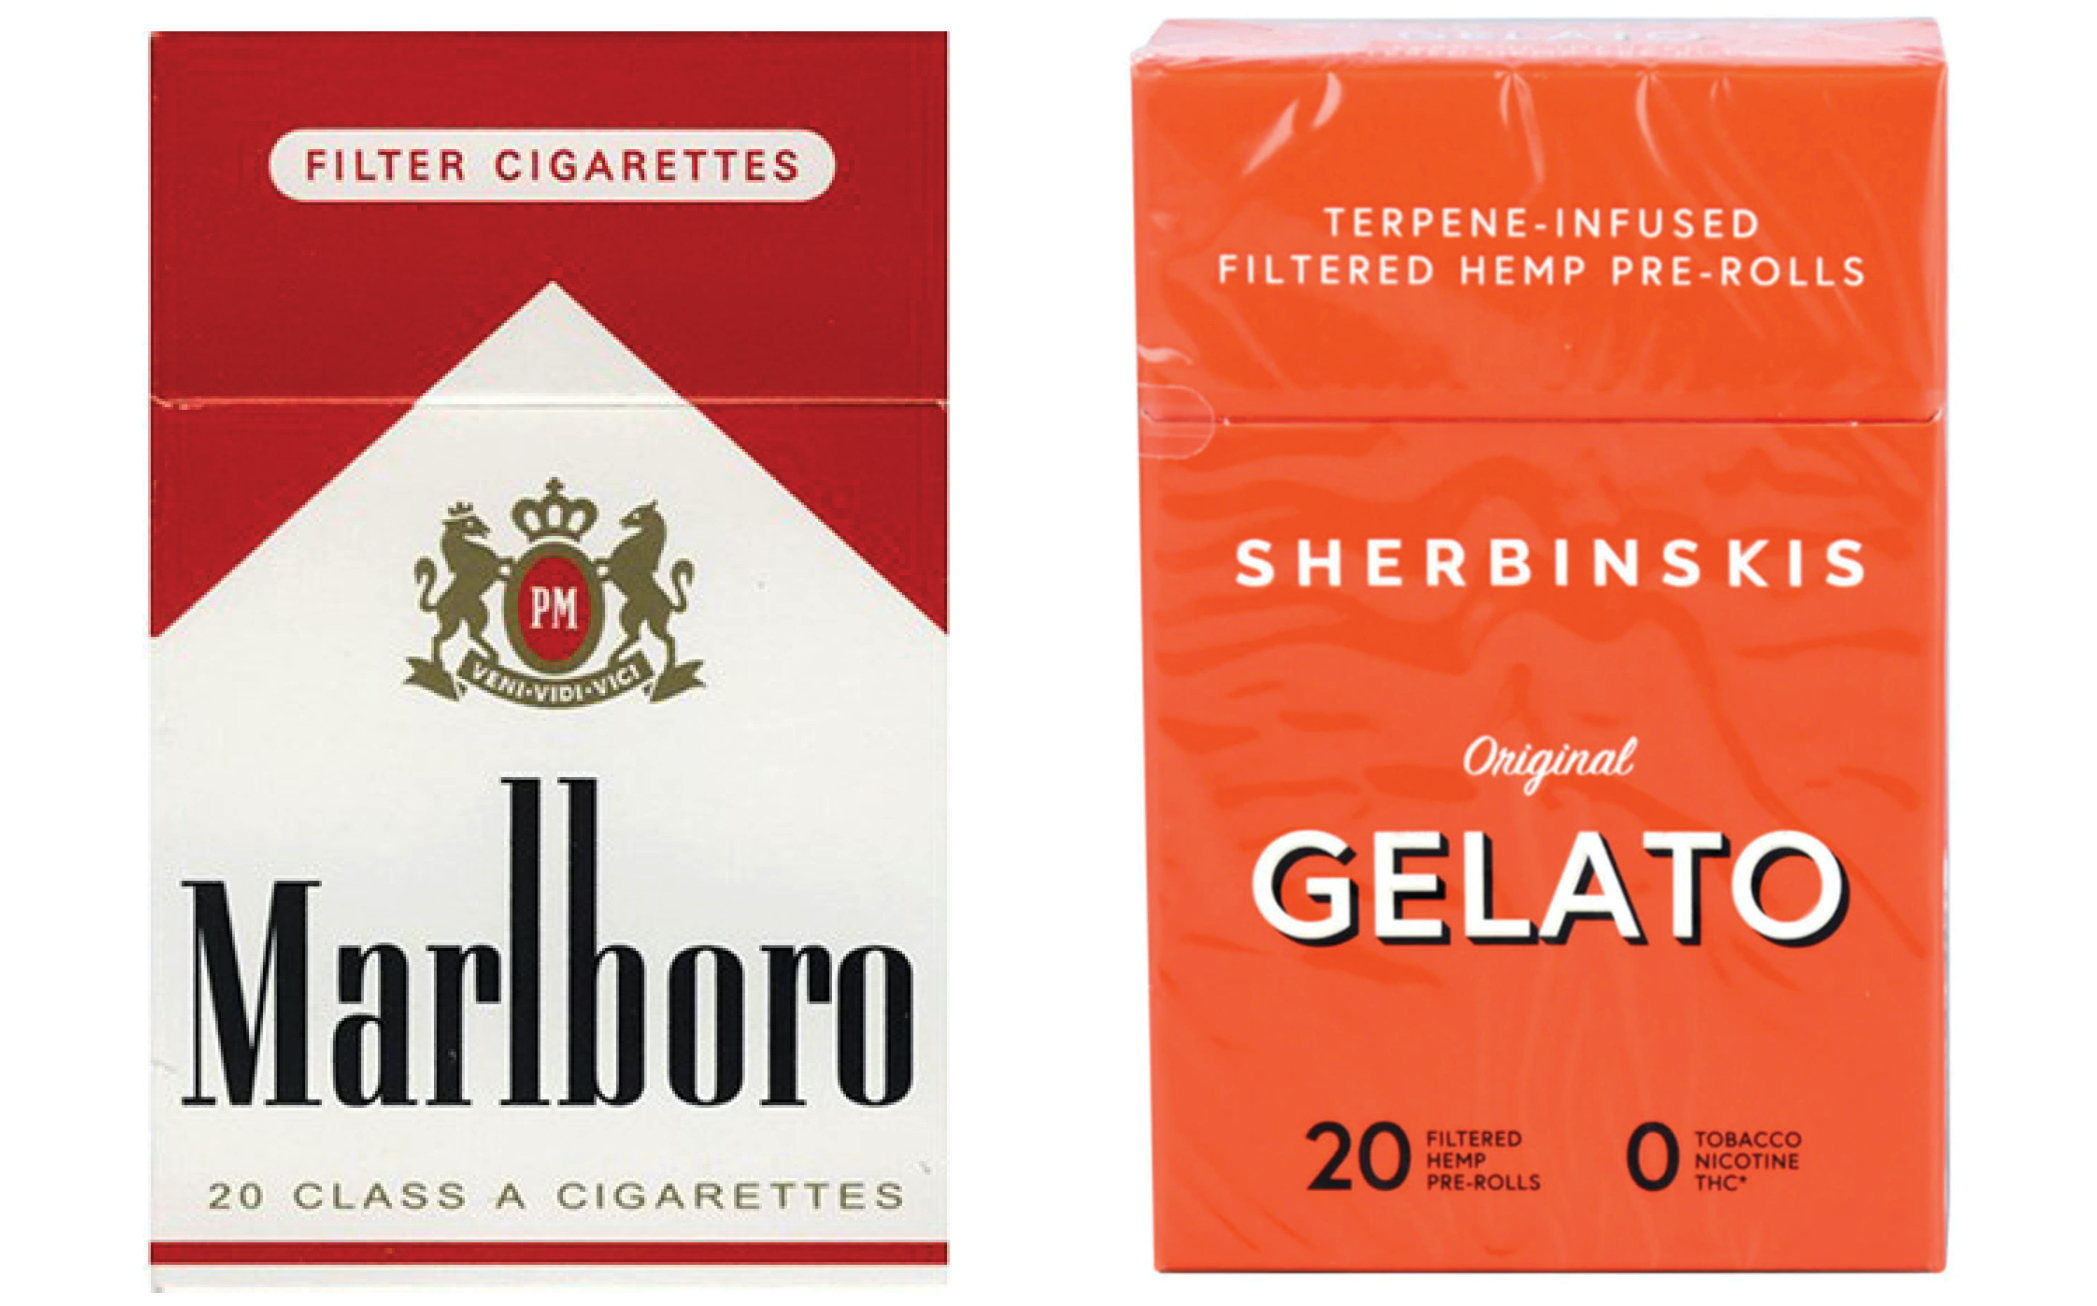 Tobacco vs Hemp Cigarette Boxes